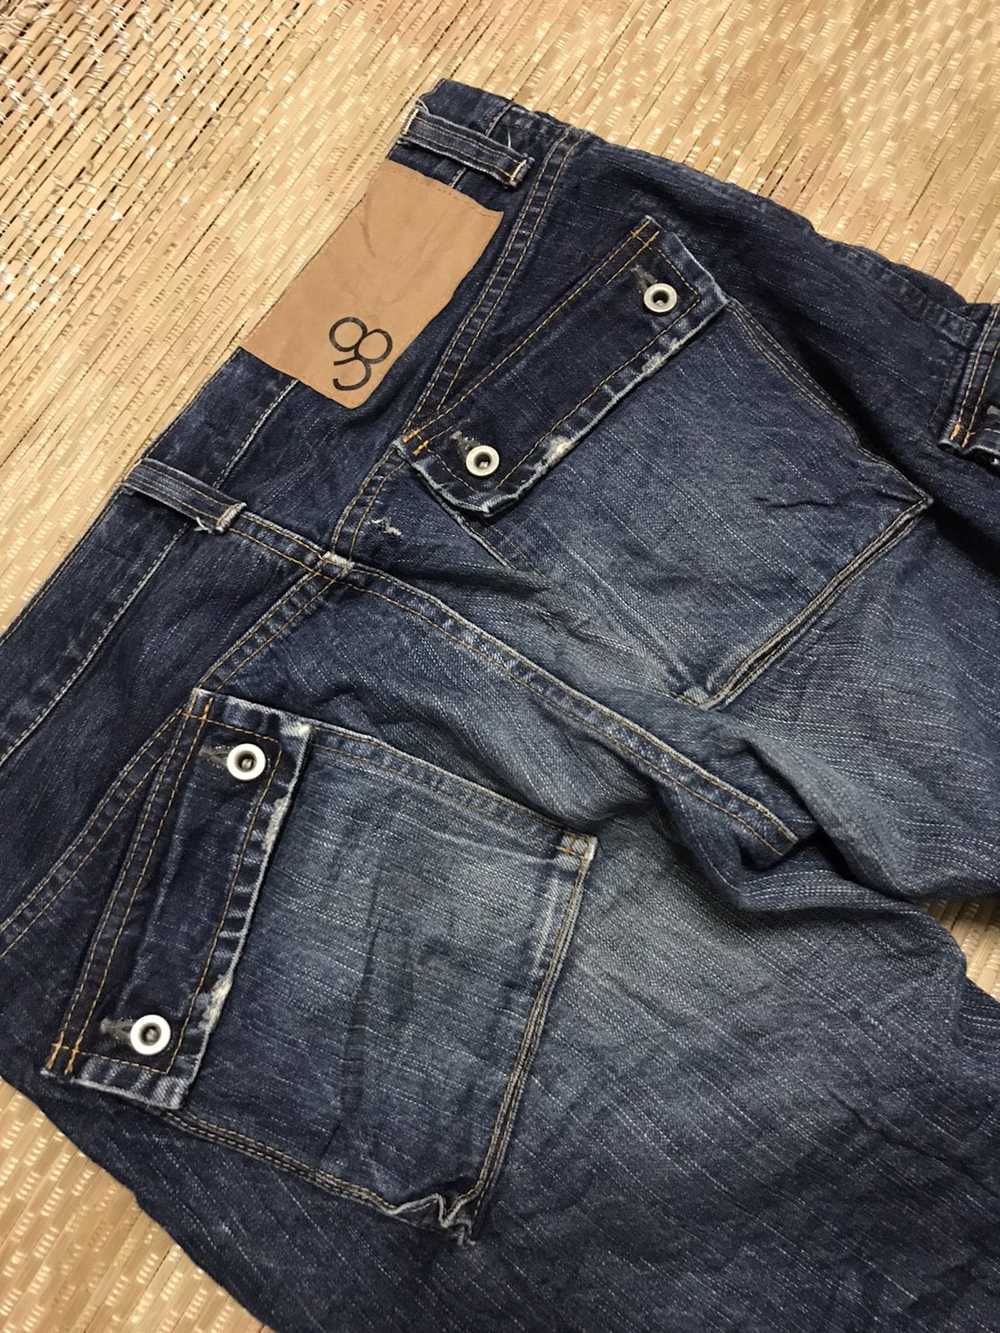 Japanese Brand × John Bull John Bull Jeans - image 3